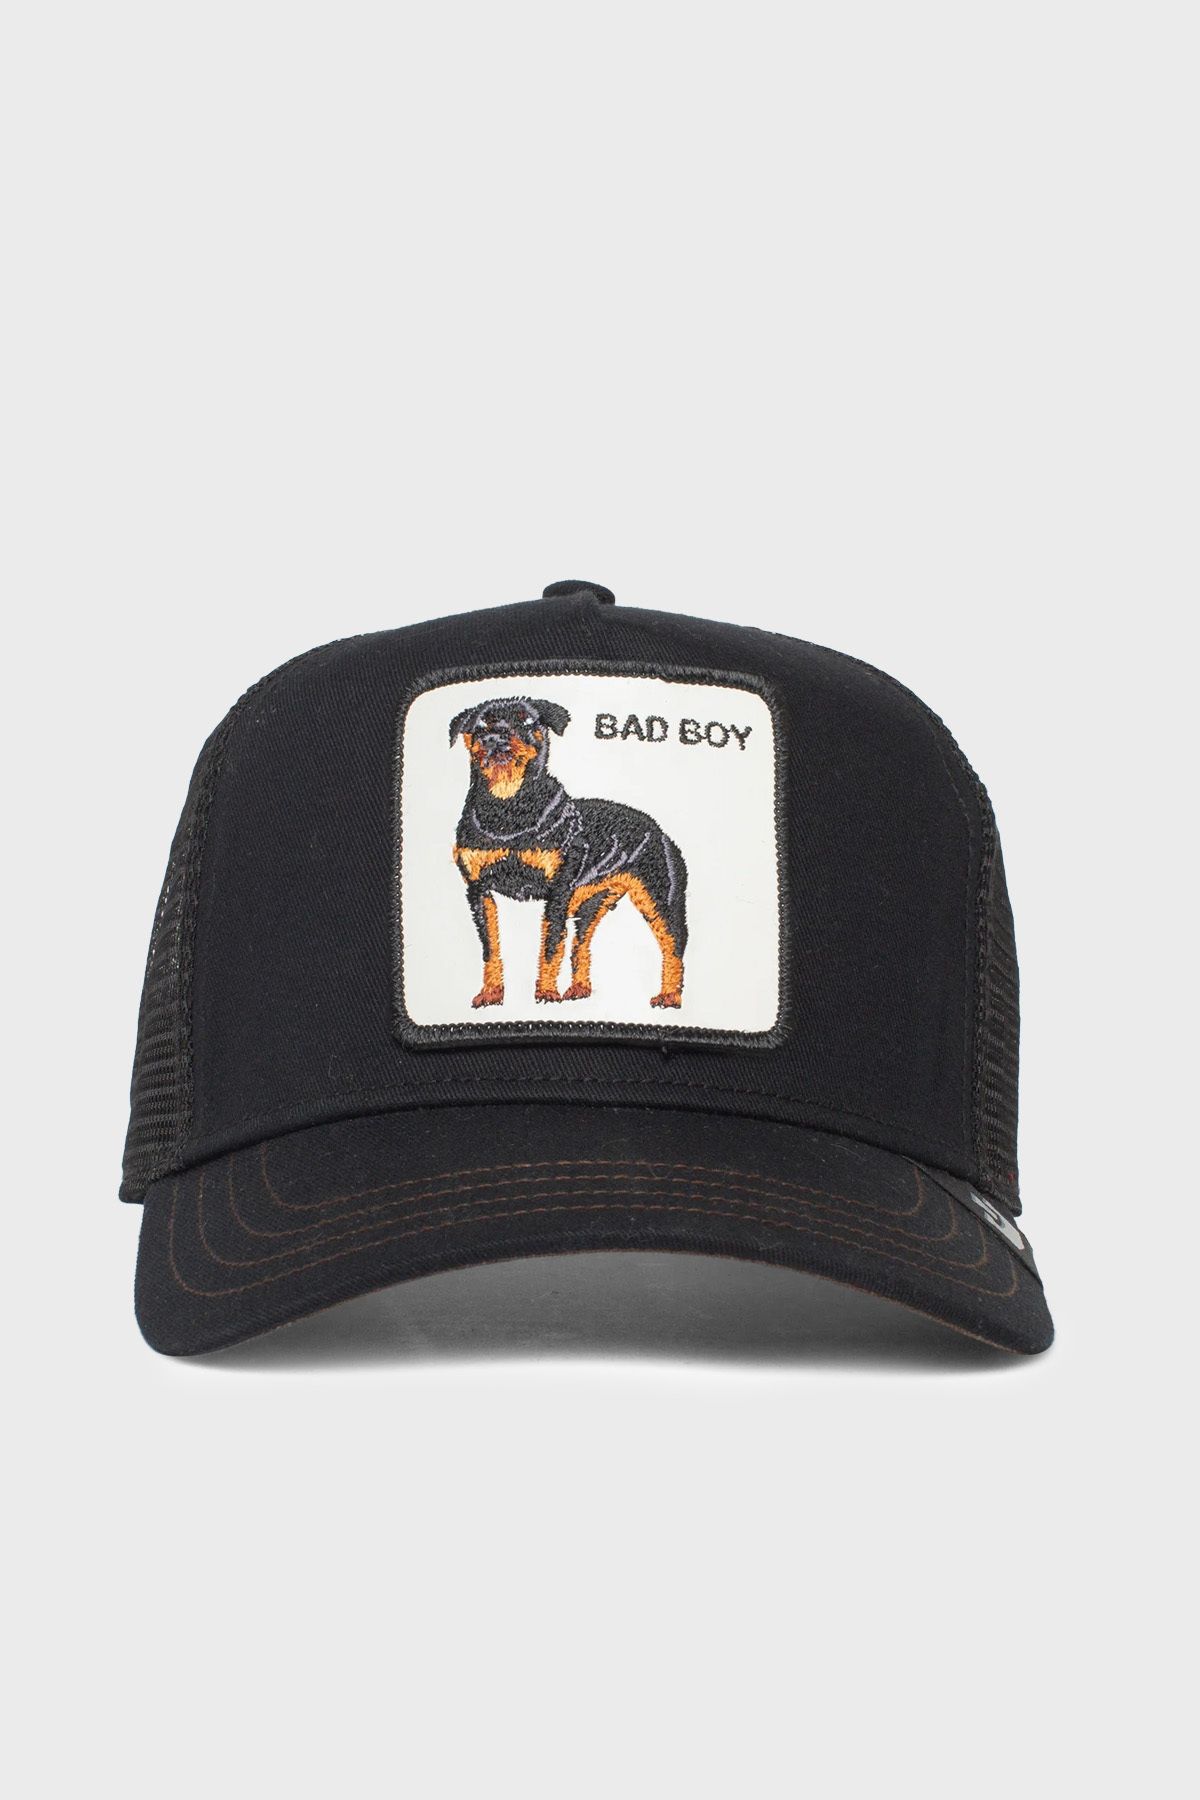 Goorin Bros 101-0493 The Baddest Boy File Detaylı Animal Desenli Şapka Unisex Şapka 1010493